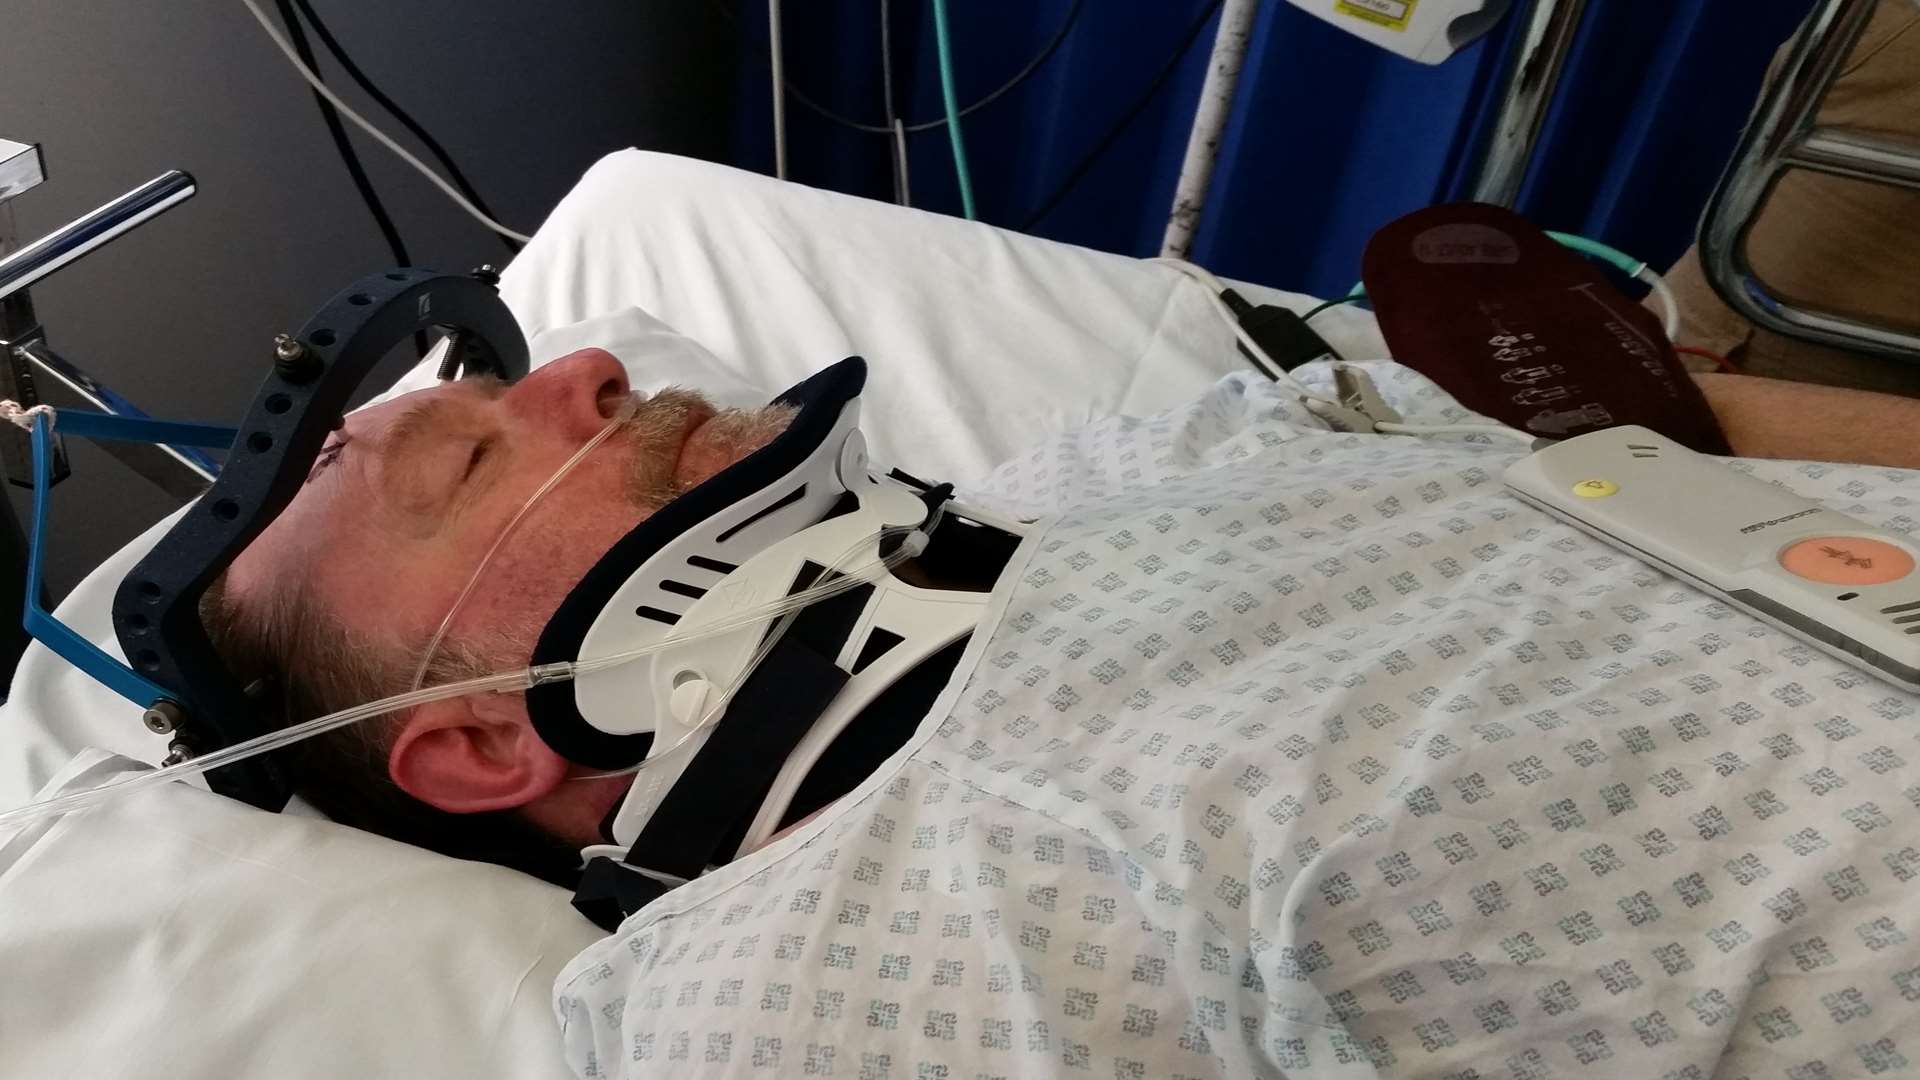 Doug Caddell in hospital